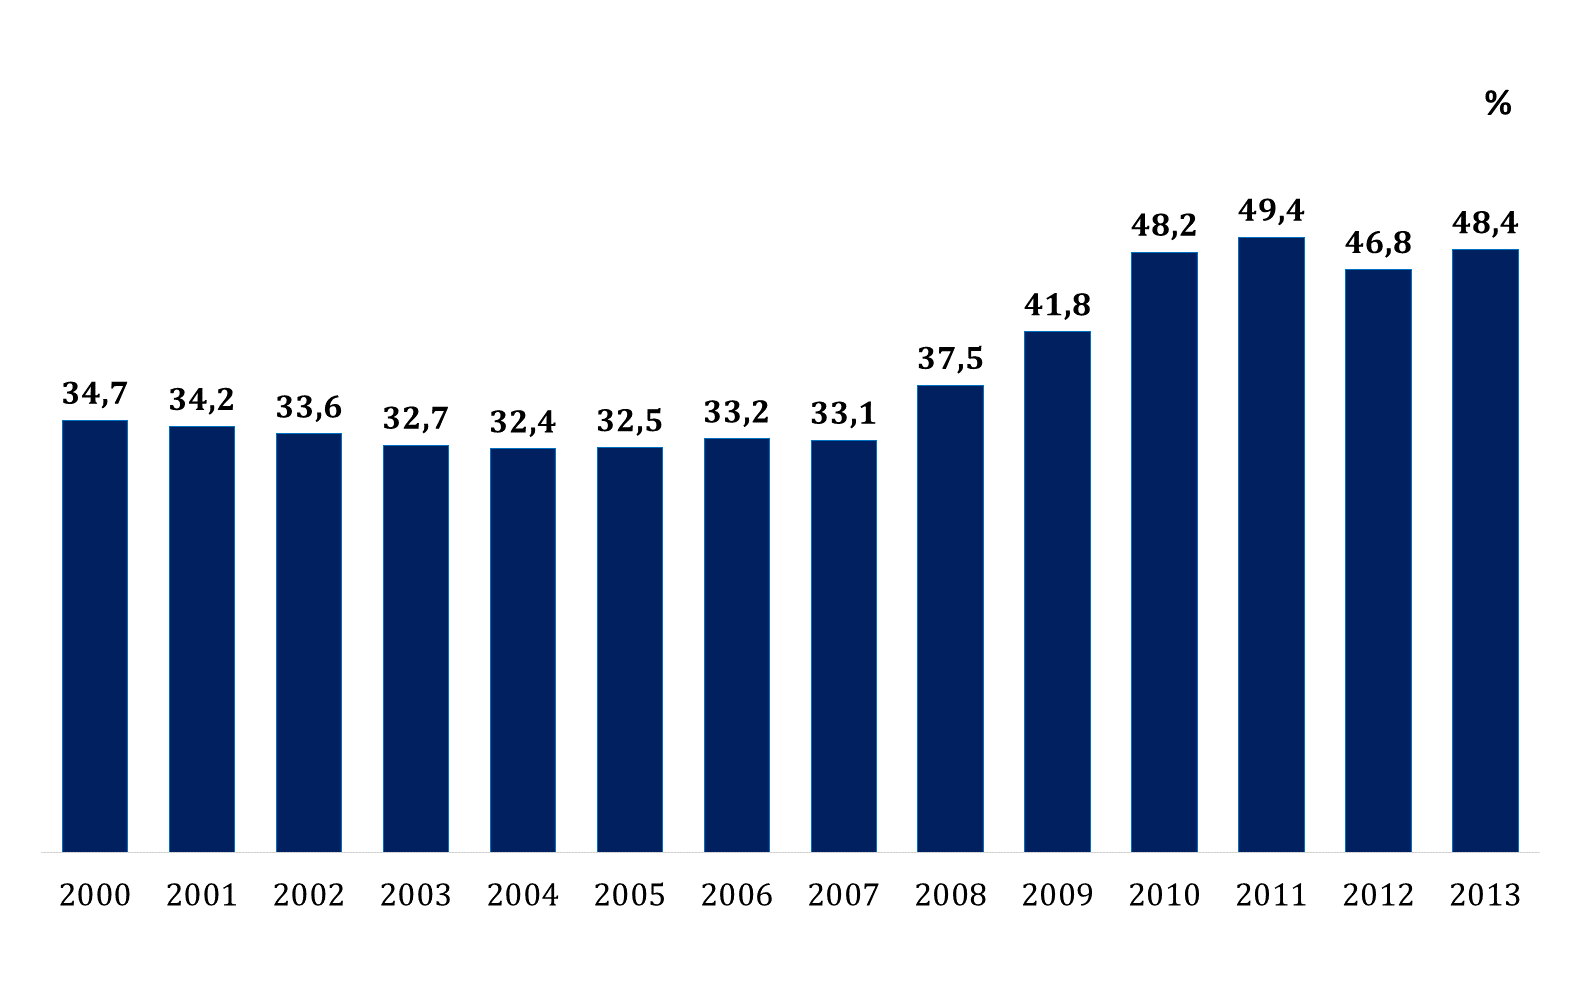 setor de serviços teve um aumento de 2,5% de 2005 para 2010 na participação do PIB do país.